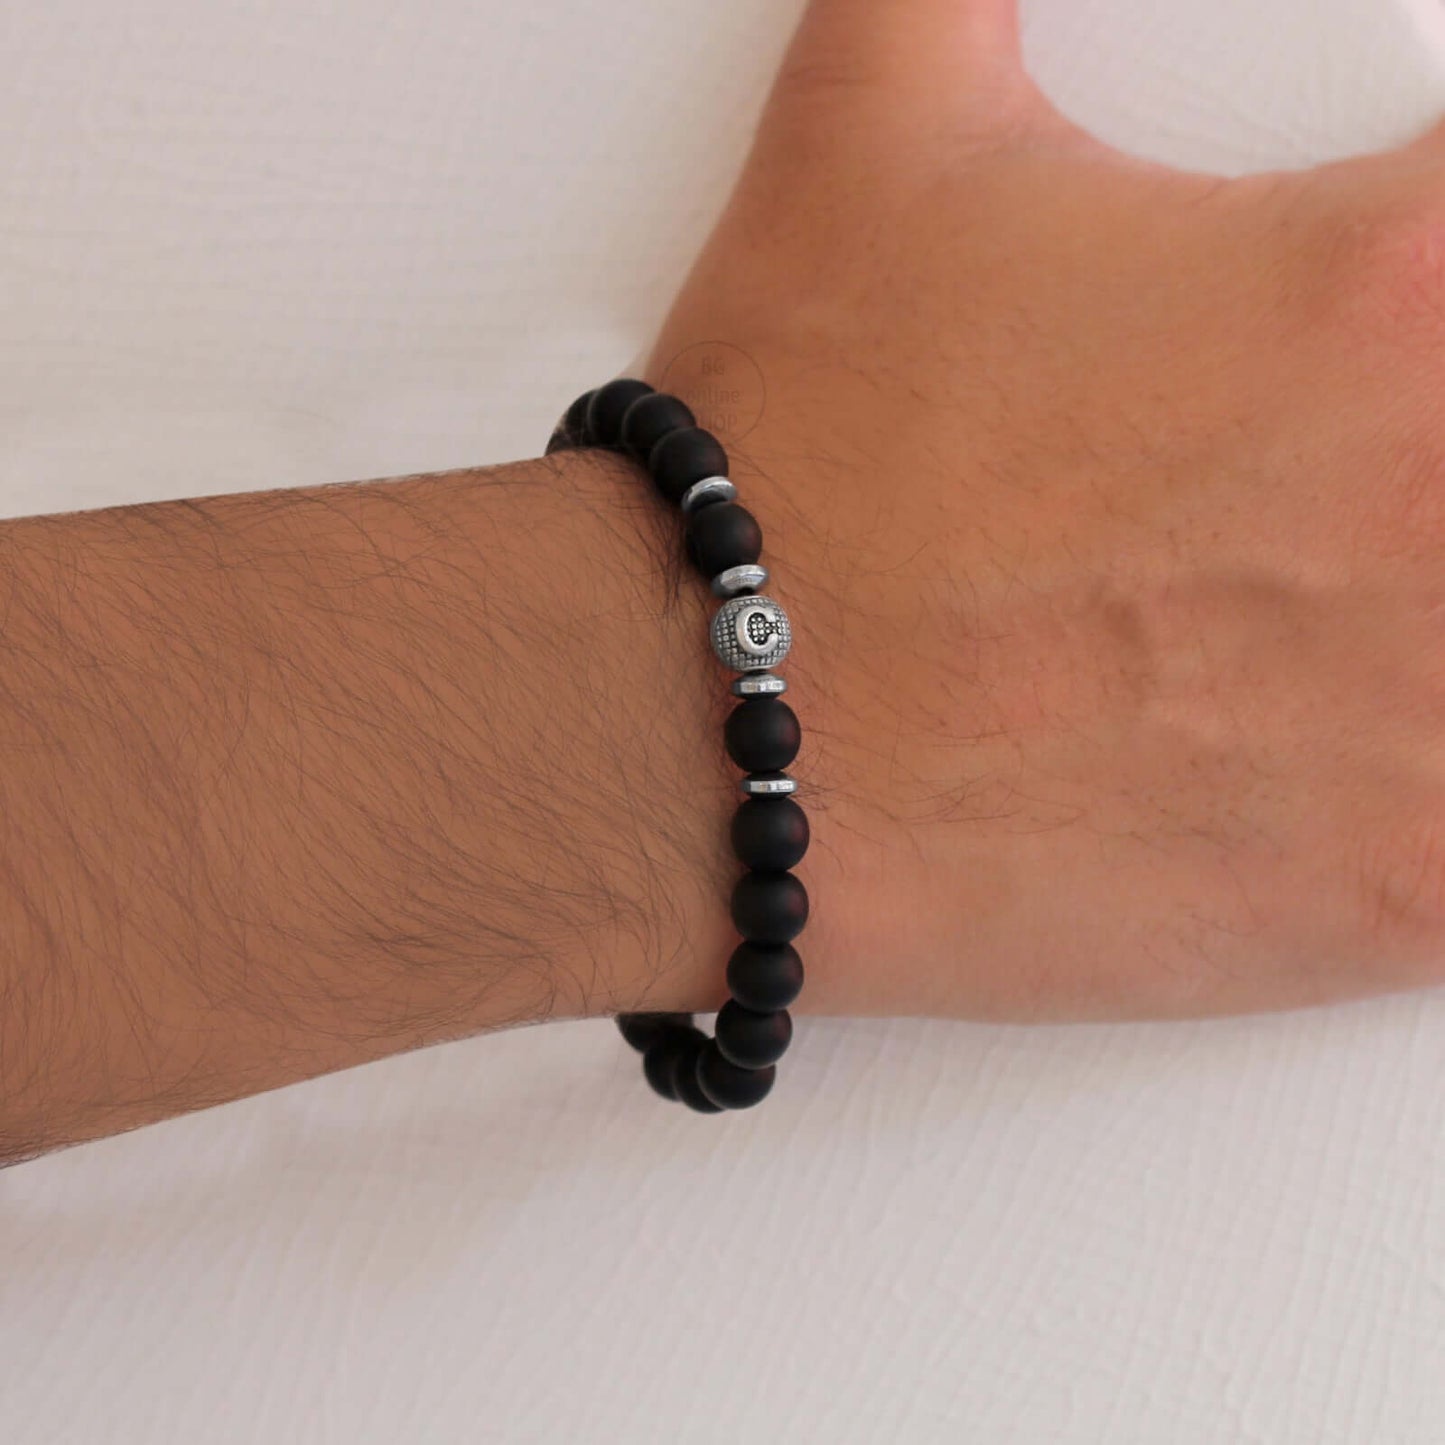 Armband - Partner Armband - Herren Armband - Onyx Stein - handgefertigt mit Personalisierung - Tesbih Mit Namen